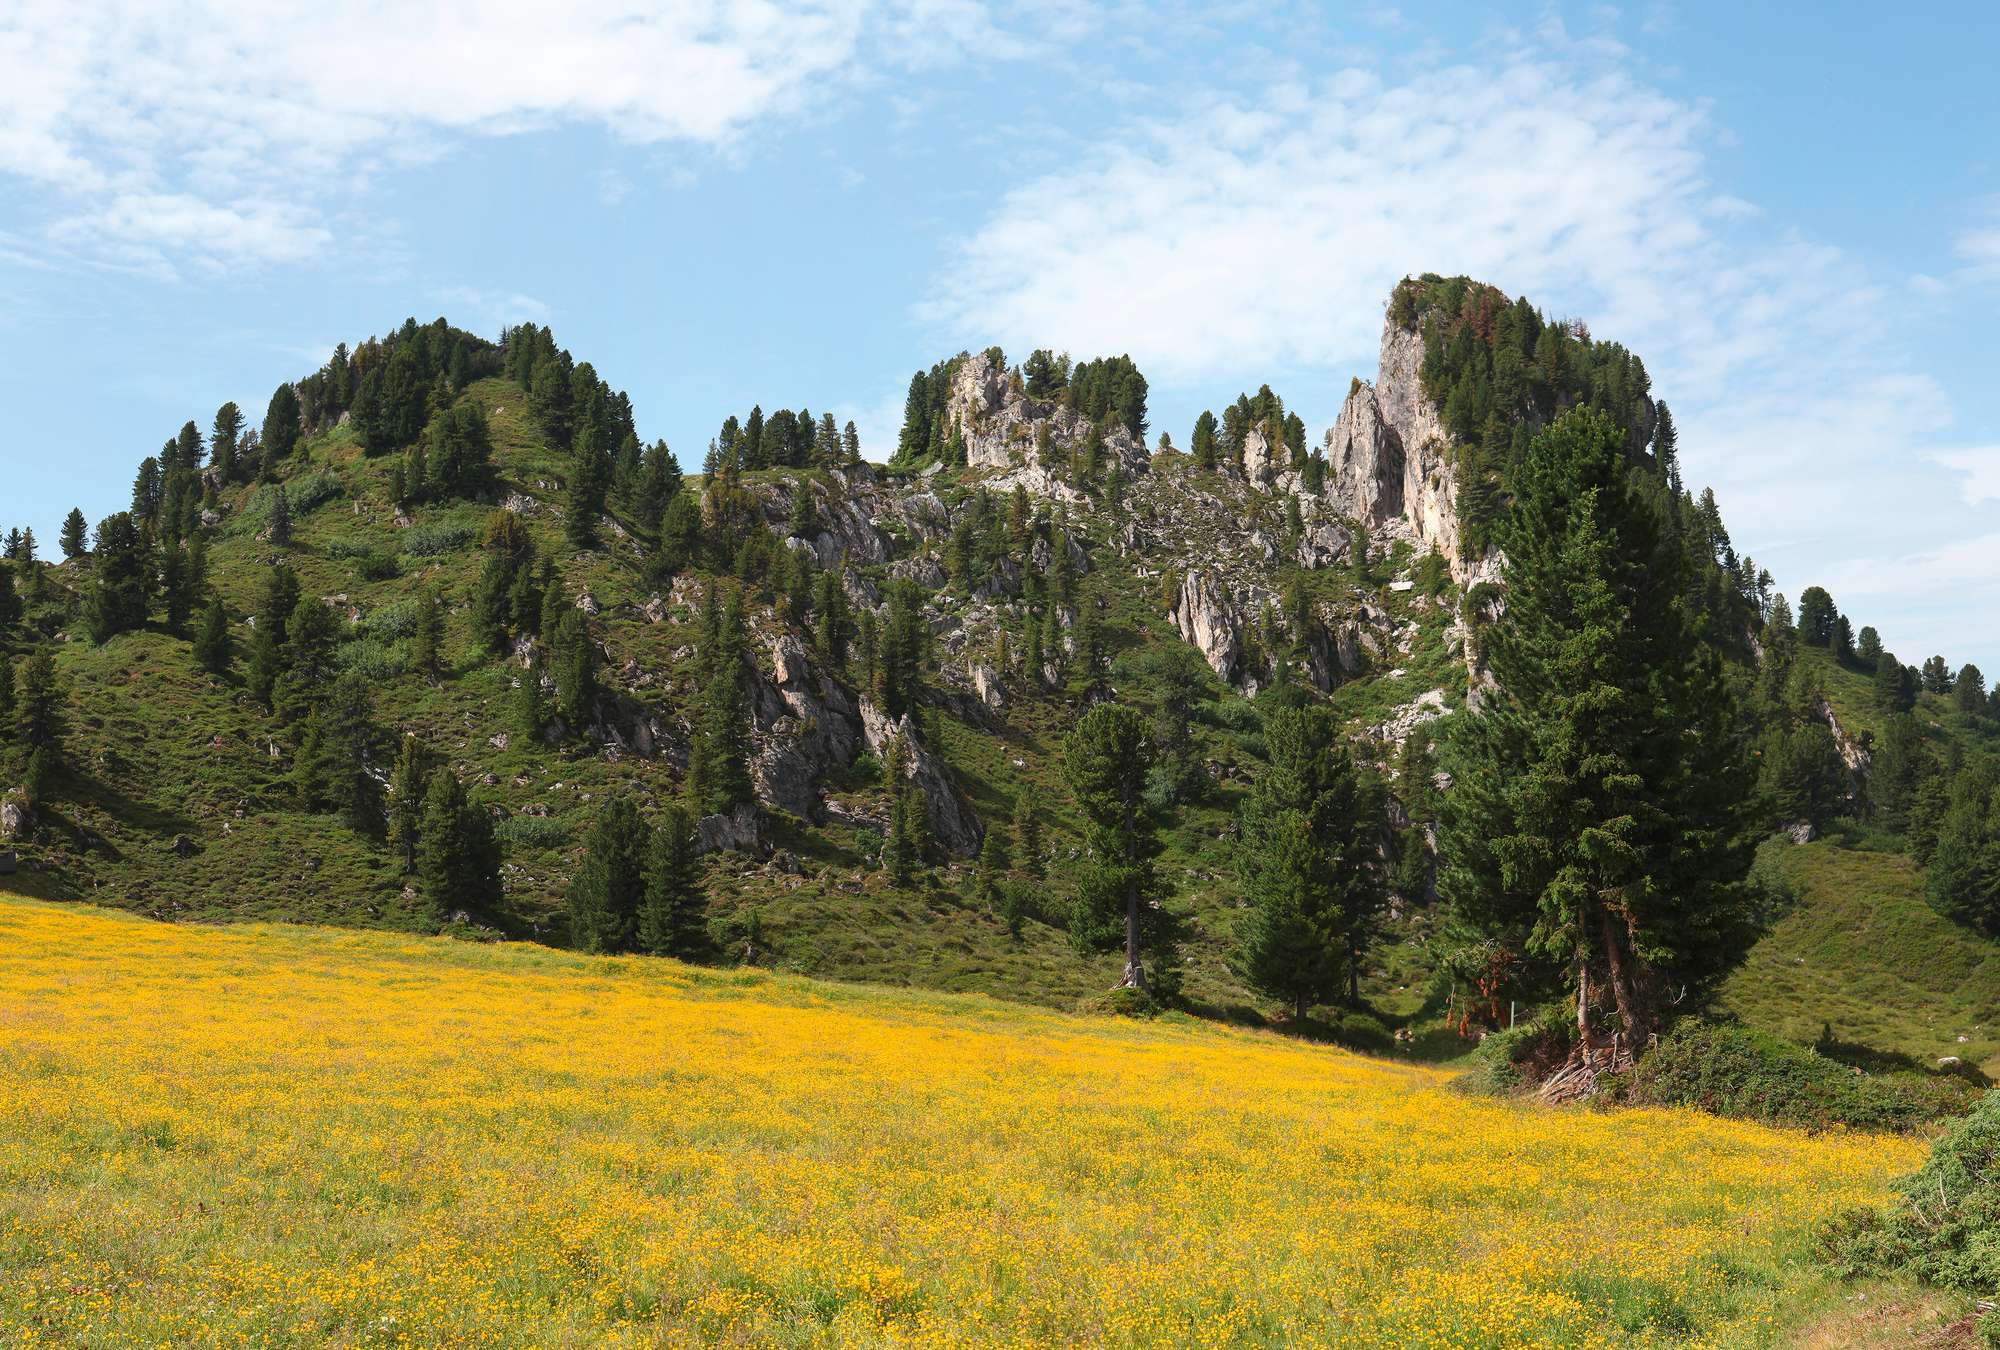             Fototapete Wiesenlandschaft mit Bergen im Hintergrund
        